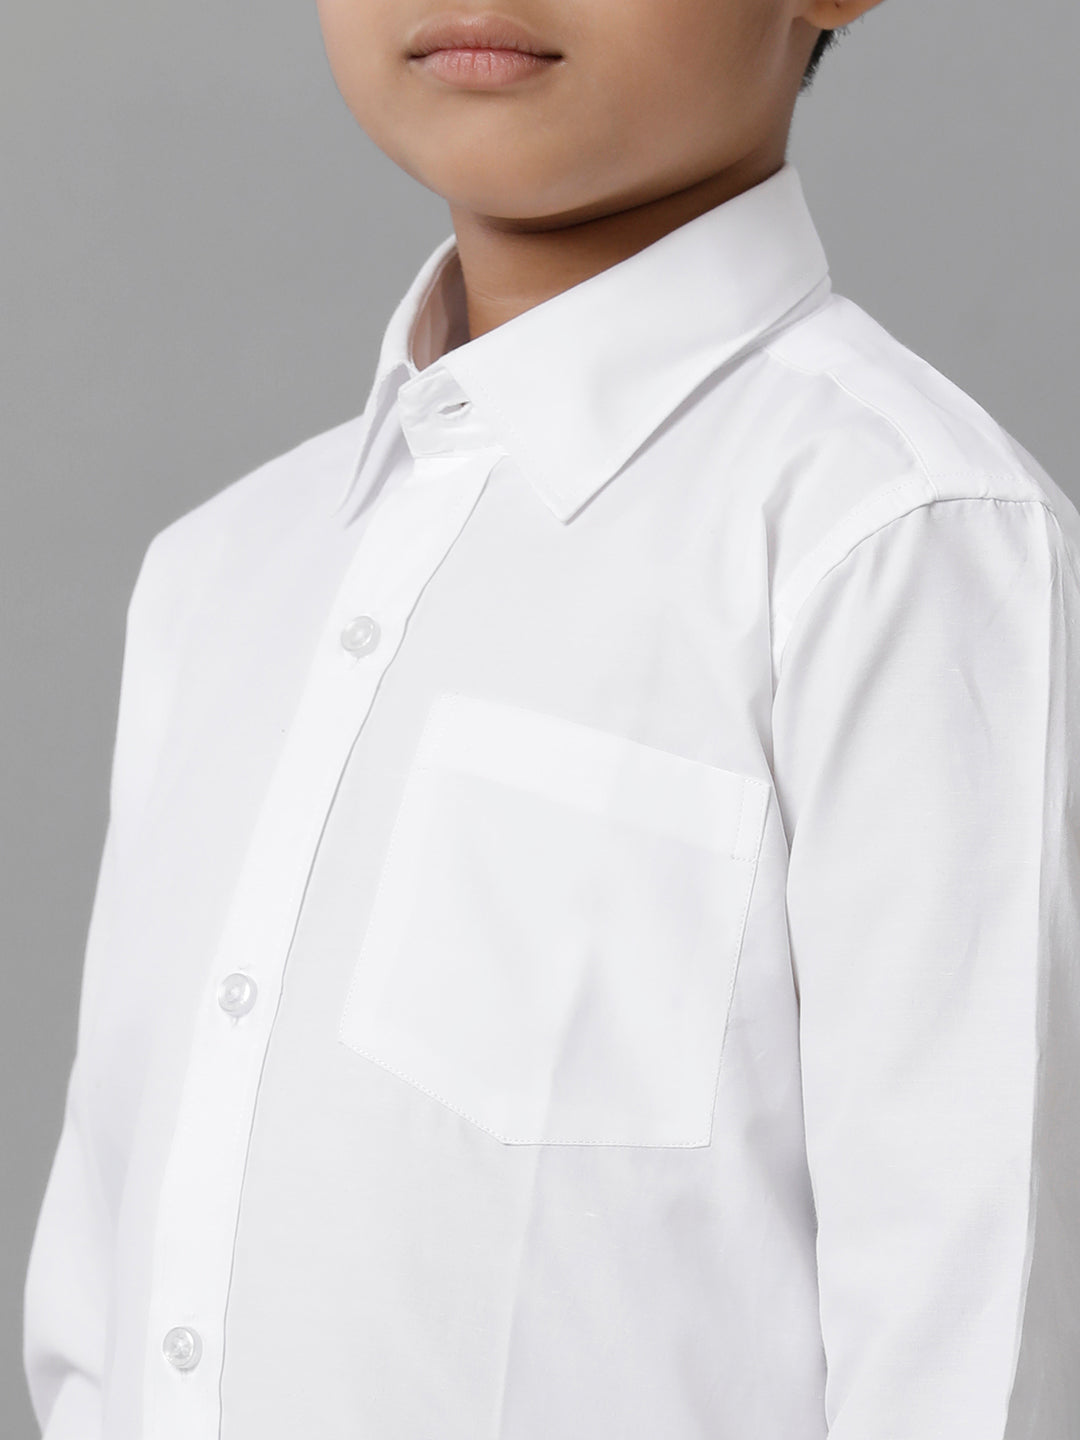 Boys Cotton White Full Sleeves Shirt Panchakacham Combo-Zoom view